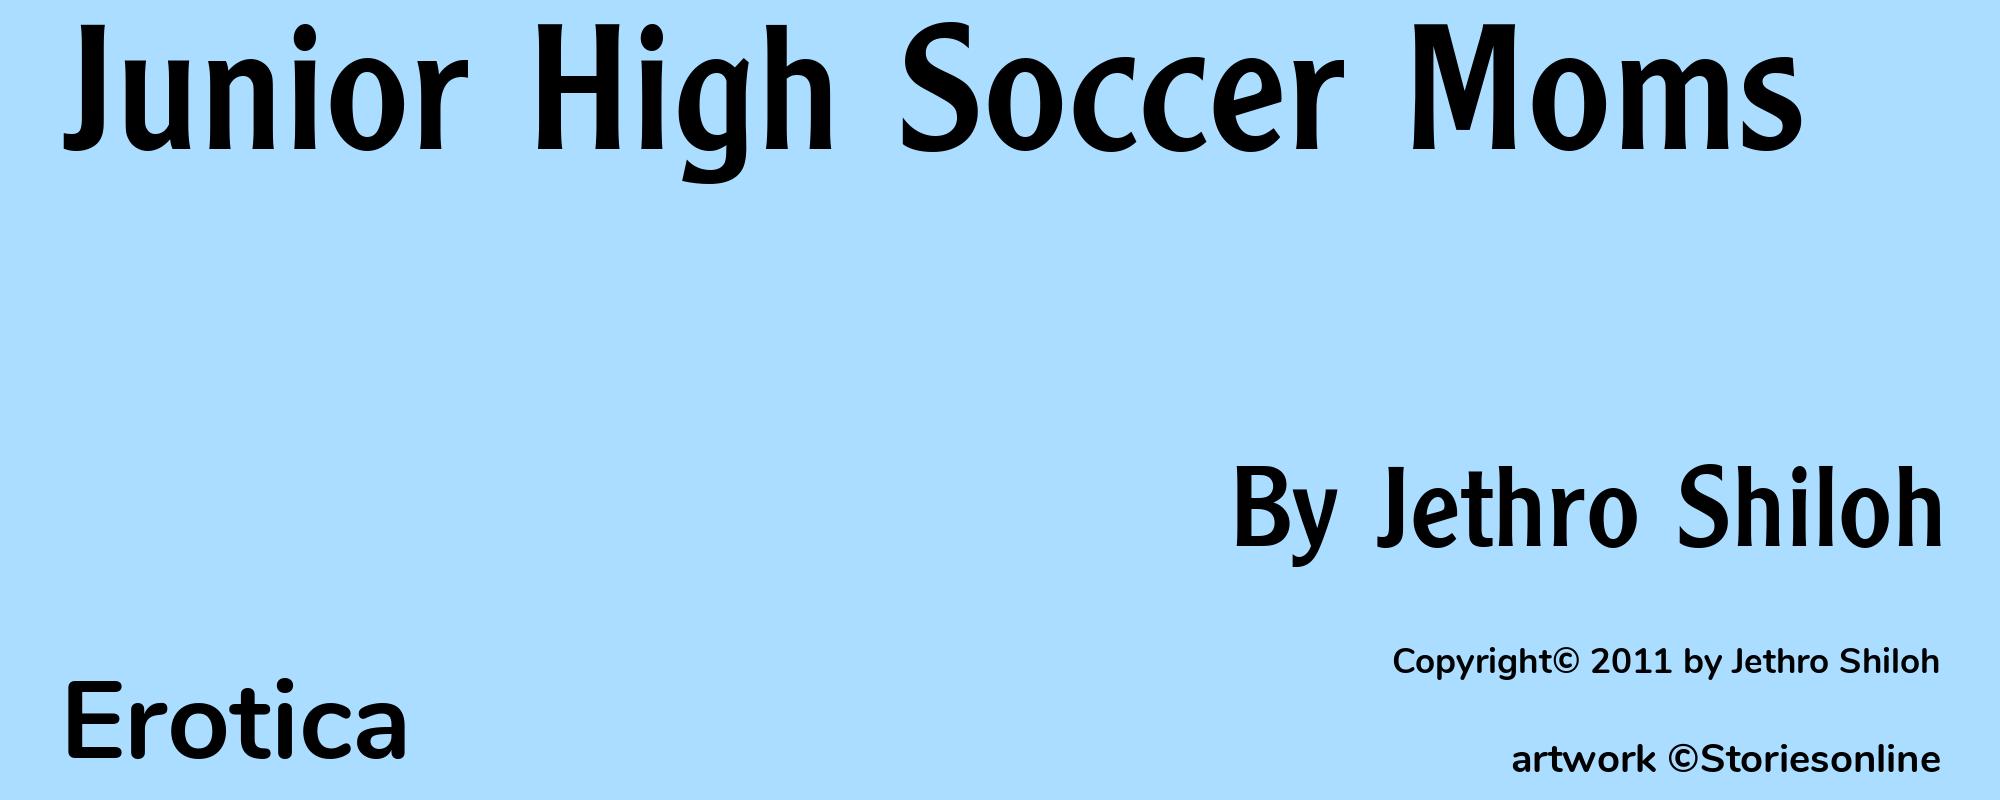 Junior High Soccer Moms - Cover